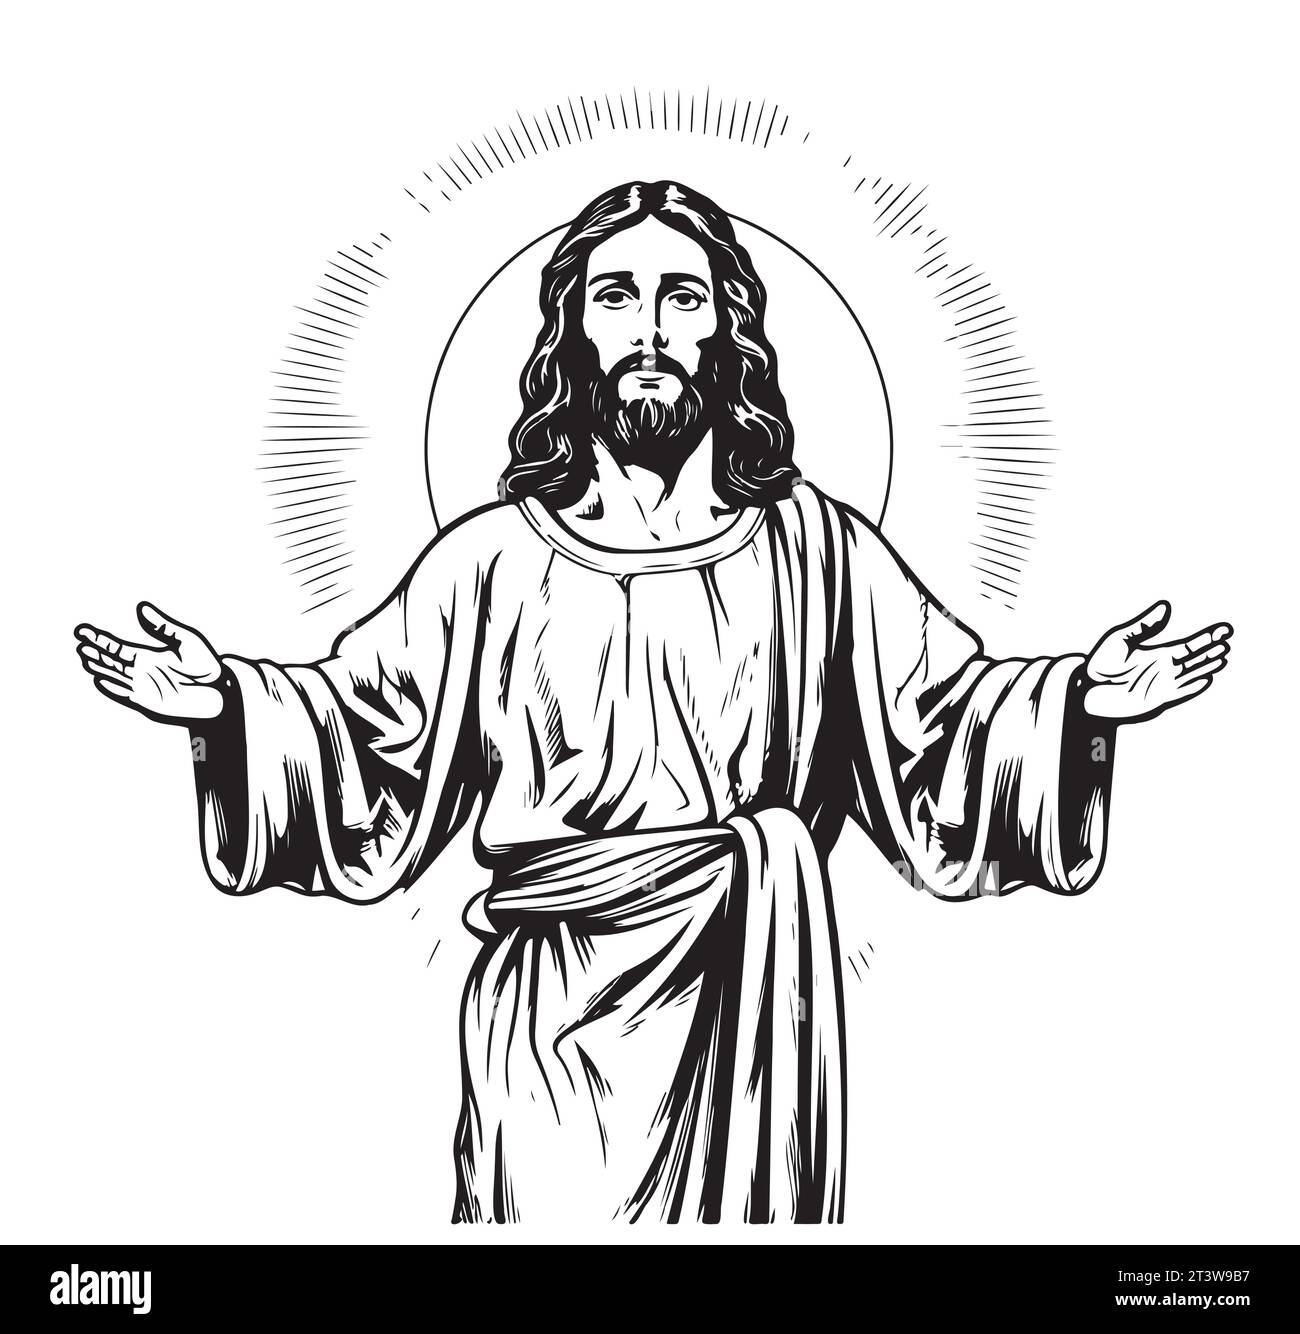 Dieu, Jésus-christ, grâce, bien, concept d'ascension. Silhouette dessinée à la main de Jésus-christ, le fils de dieu esquisse conceptuelle. Vecteur isolé Illustration de Vecteur